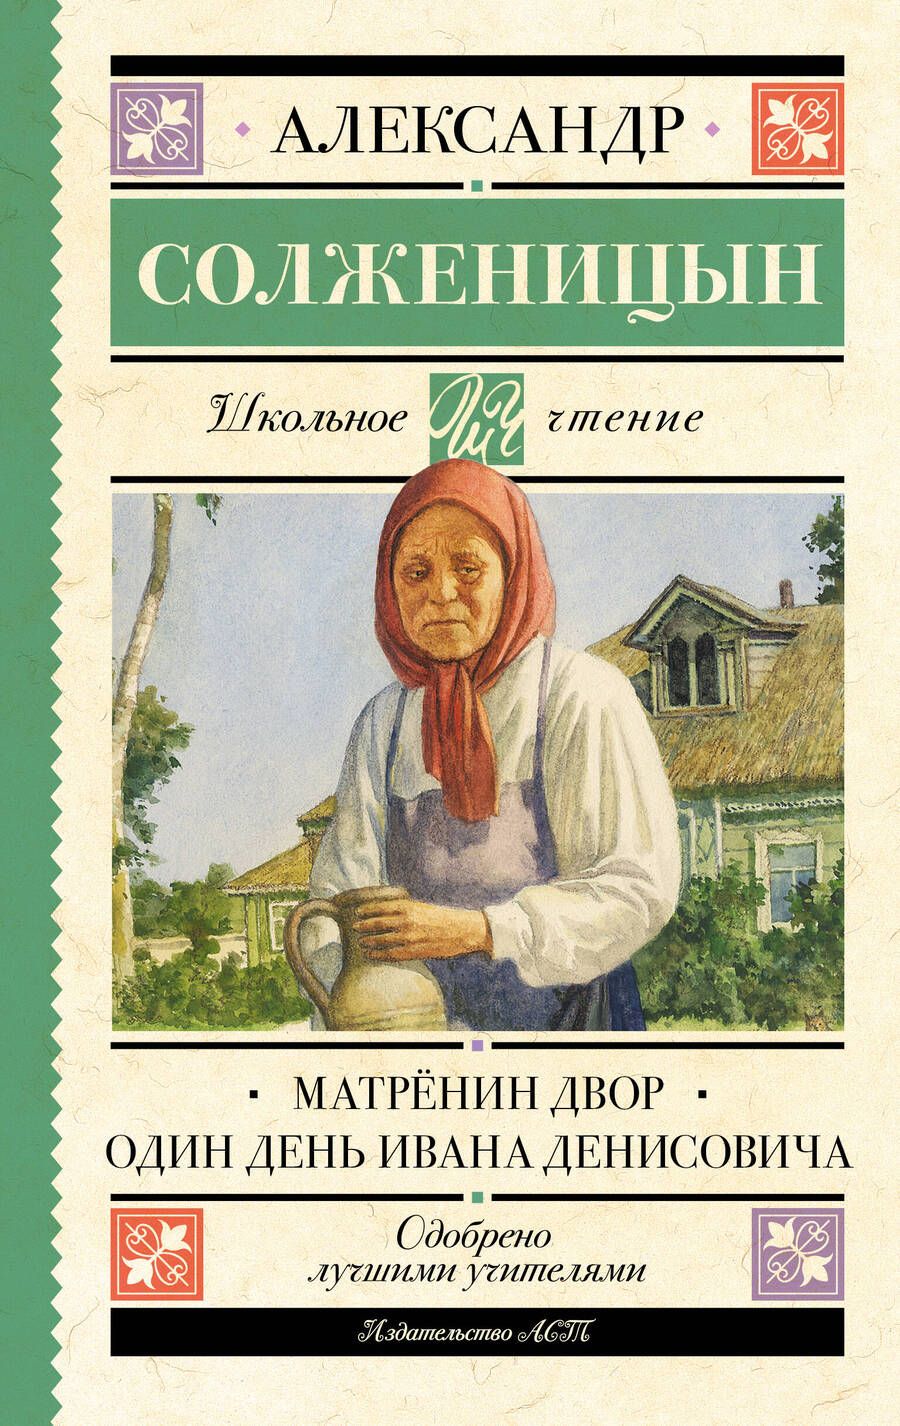 Обложка книги "Солженицын: Матрёнин двор. Один день Ивана Денисовича"